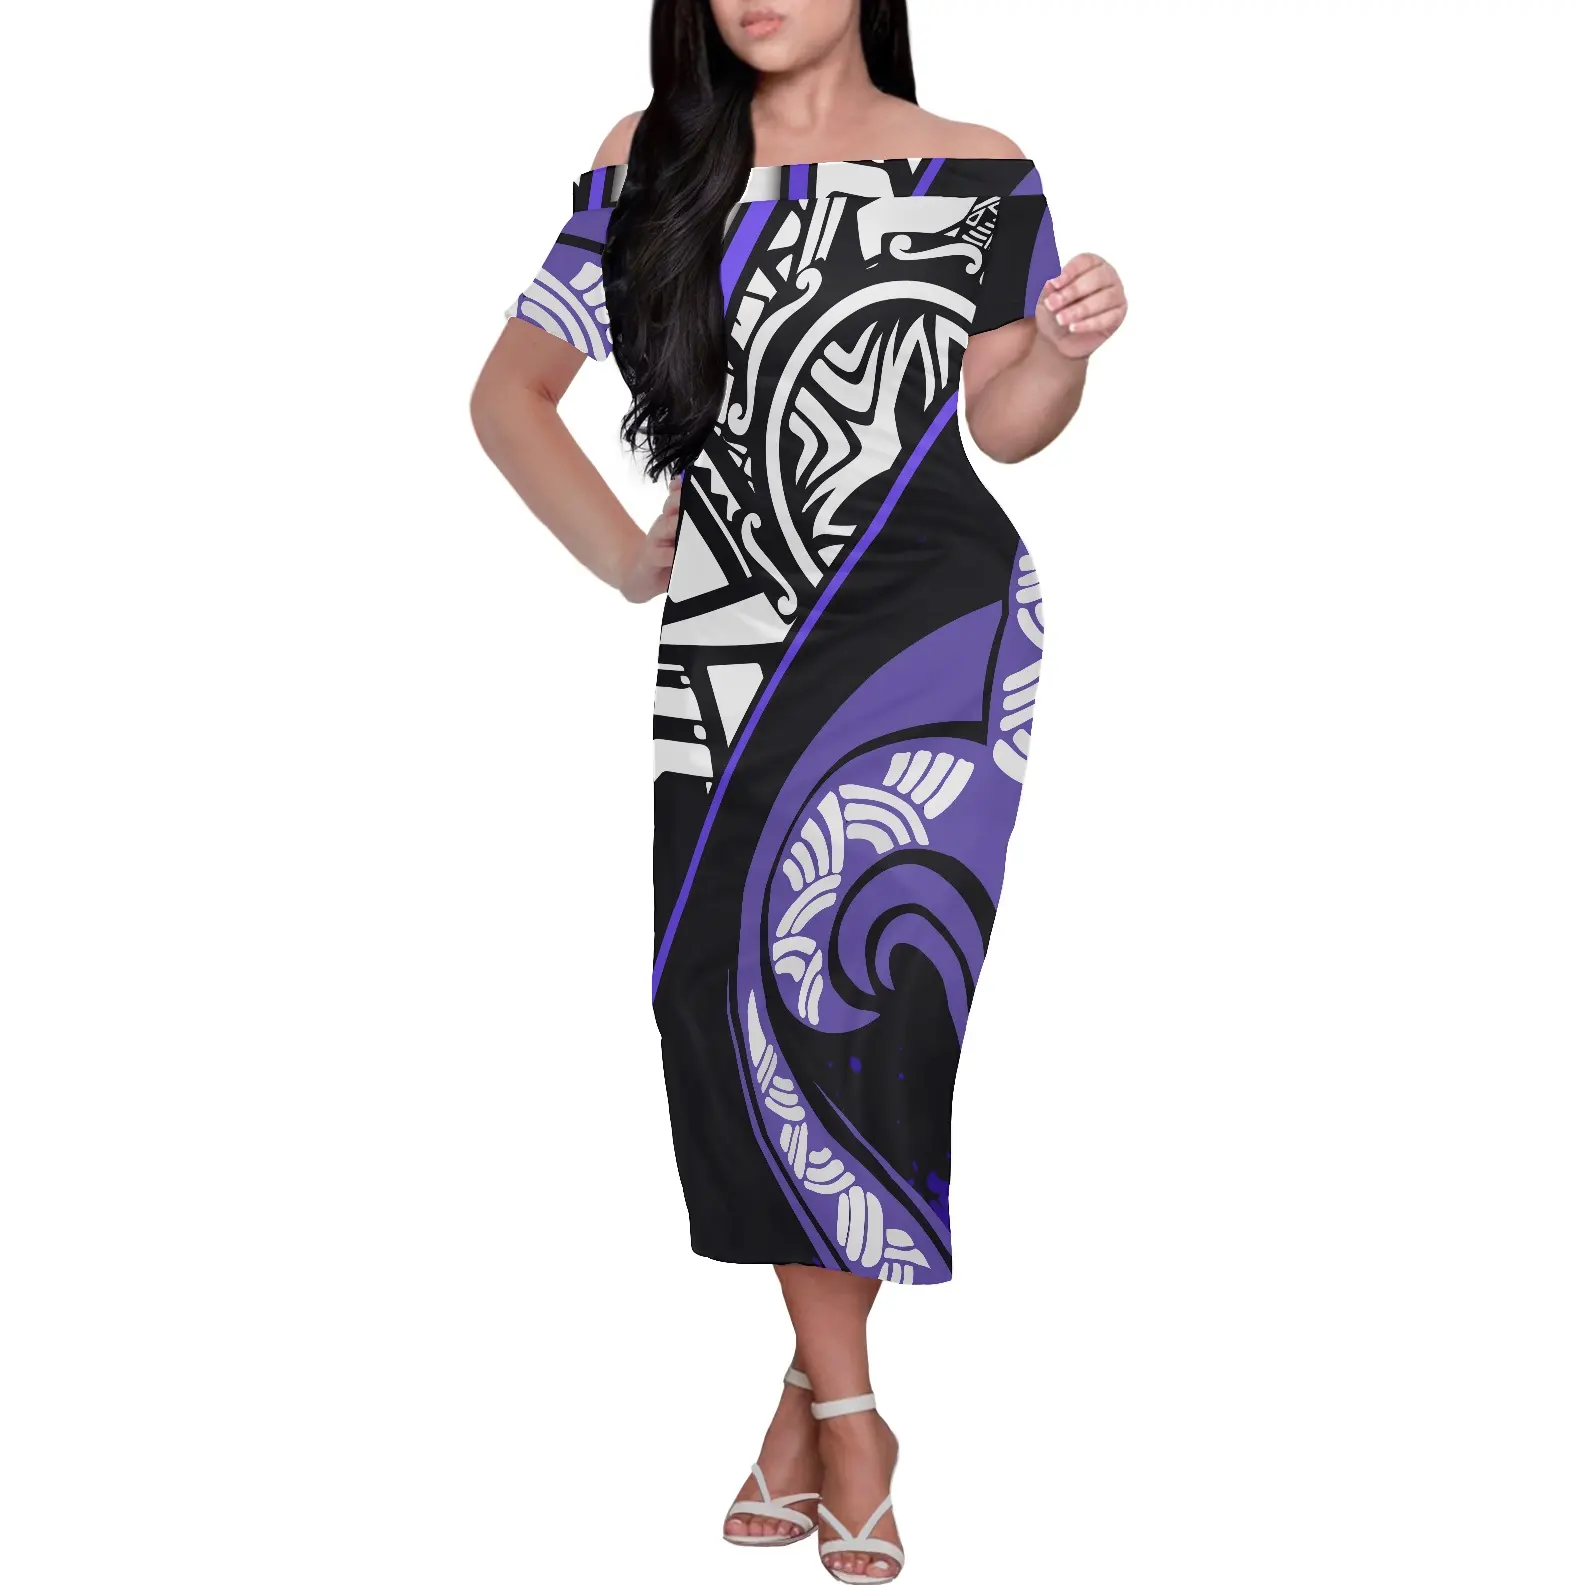 Samoan polinezya dövme tasarımları çiçek yaz elbisesi bayan giyim kapalı omuz Midi elbise kısa kollu parti Bodycon elbise